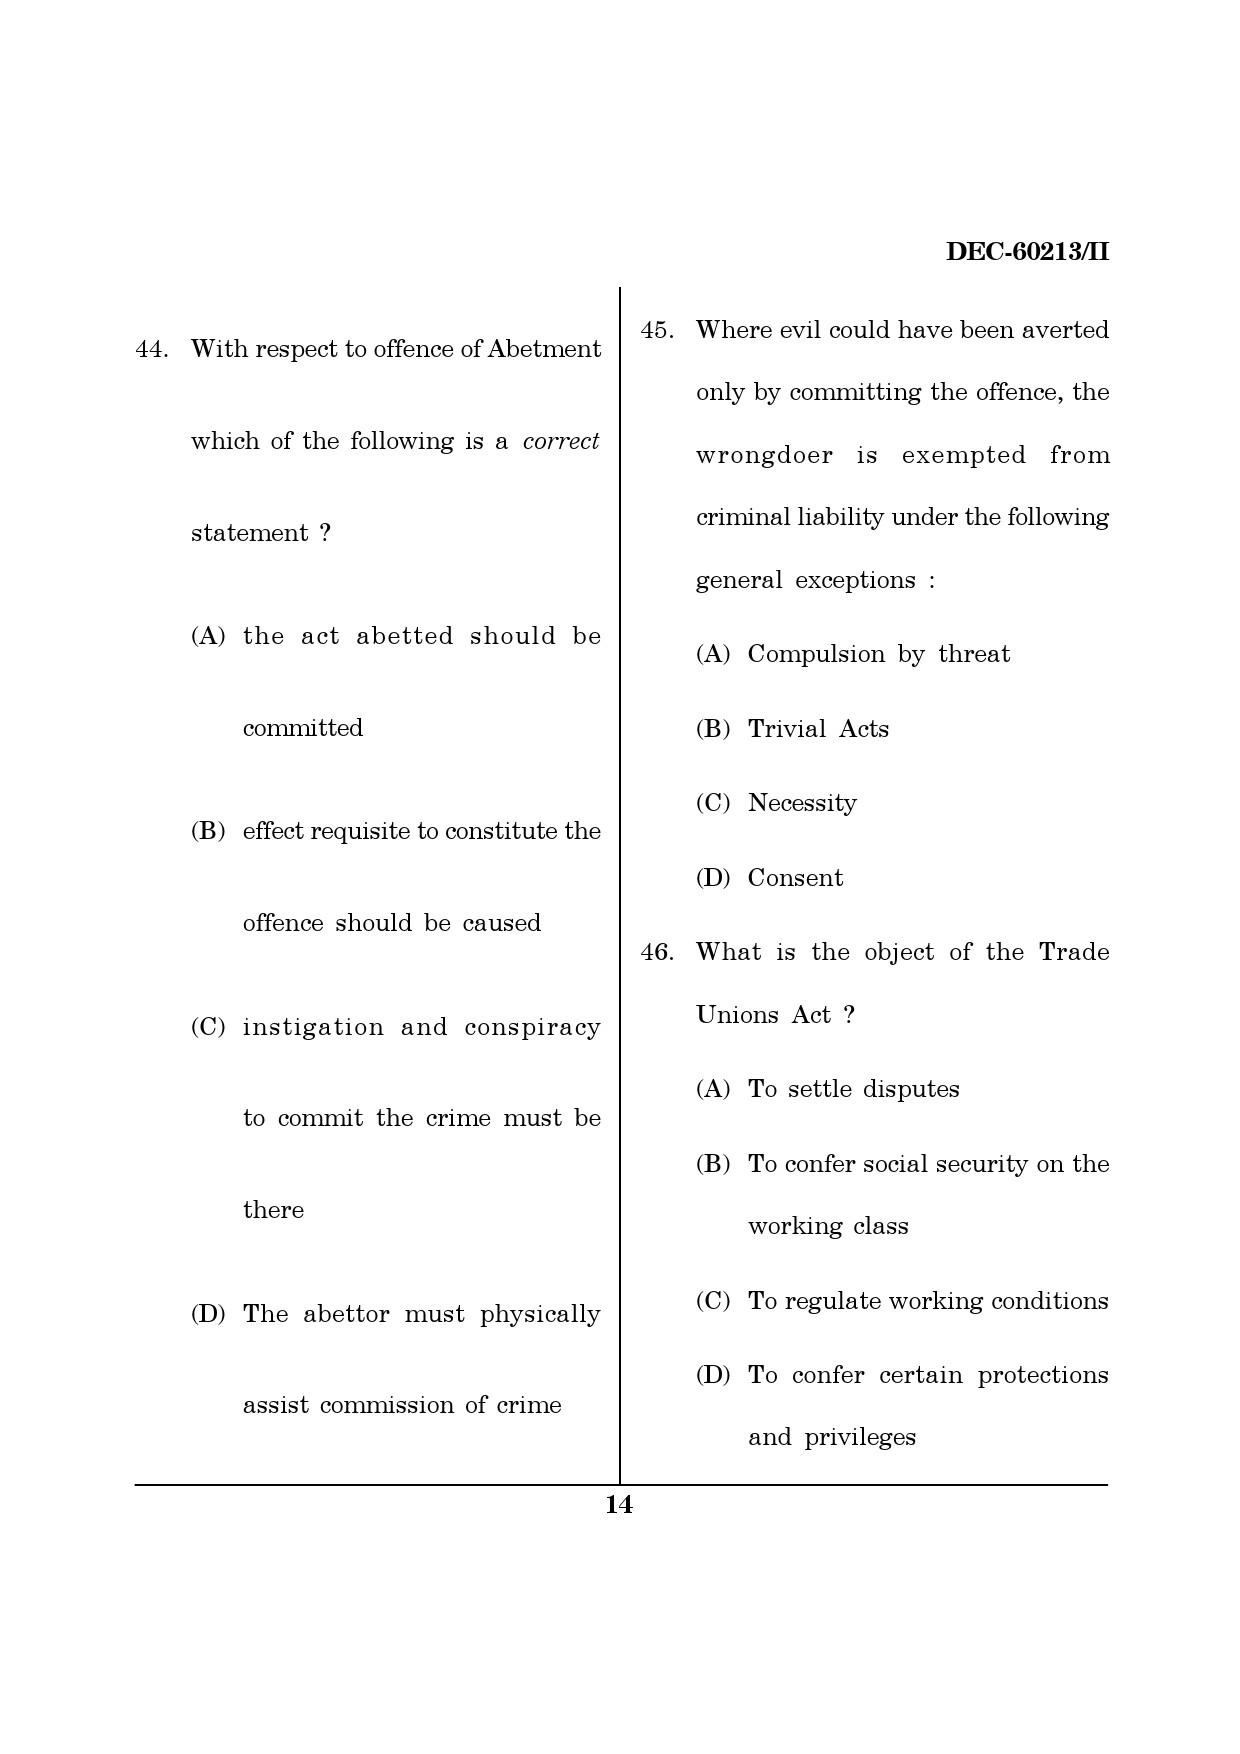 Maharashtra SET Law Question Paper II December 2013 13